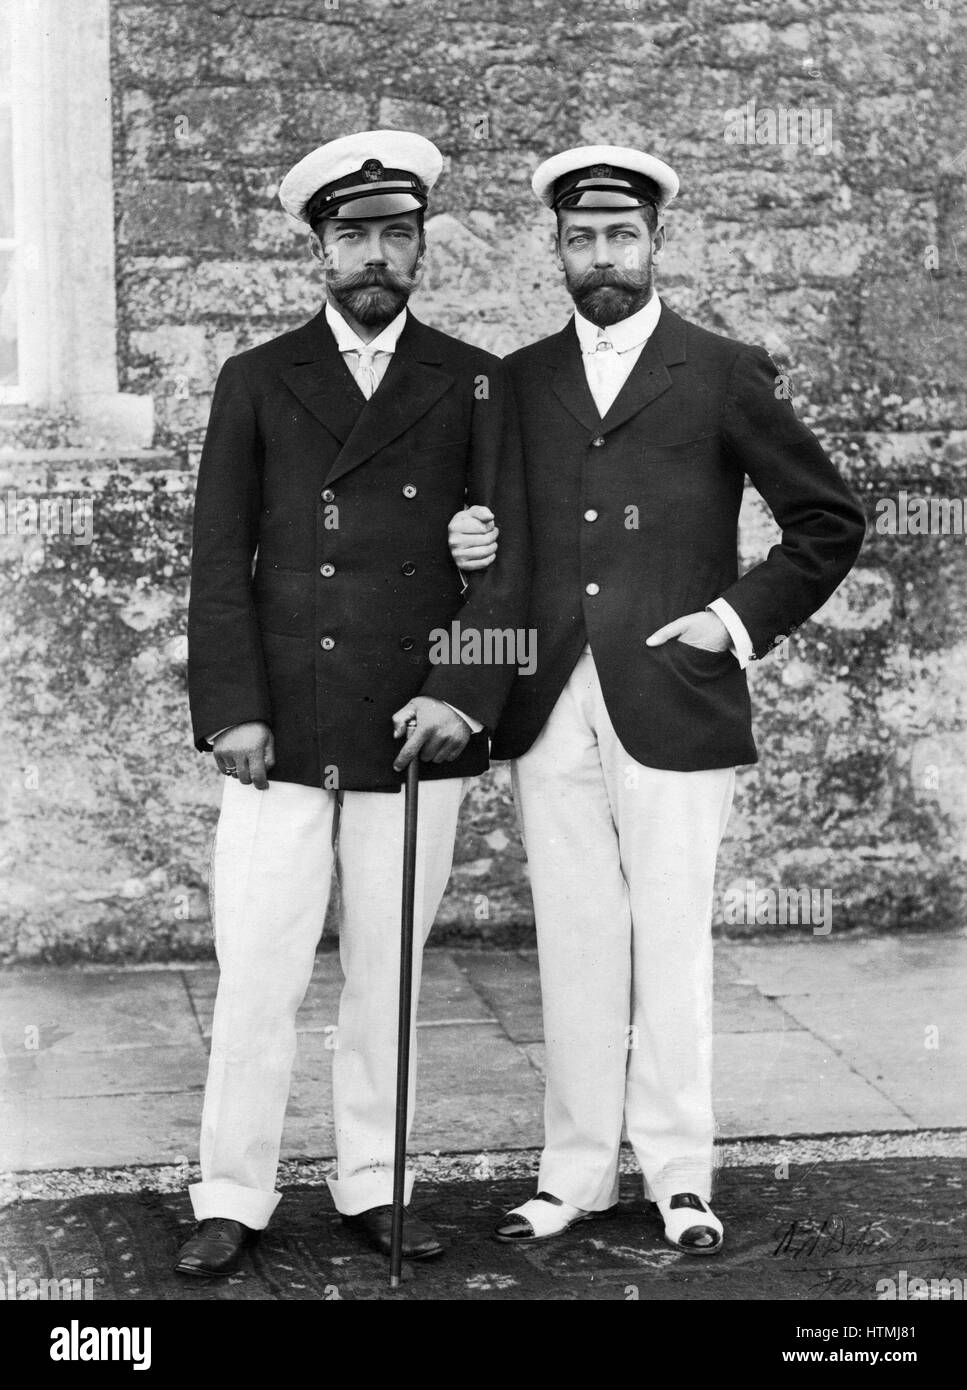 Nicolas II (1868-1918) Empereur de Russie de 1894 (à gauche) avec son cousin George V (1865-1936) Roi de Grande-Bretagne à partir de 1910. Les deux hommes étaient les petits-fils de la reine Victoria (1819-1901). Photographie. 1915 Banque D'Images